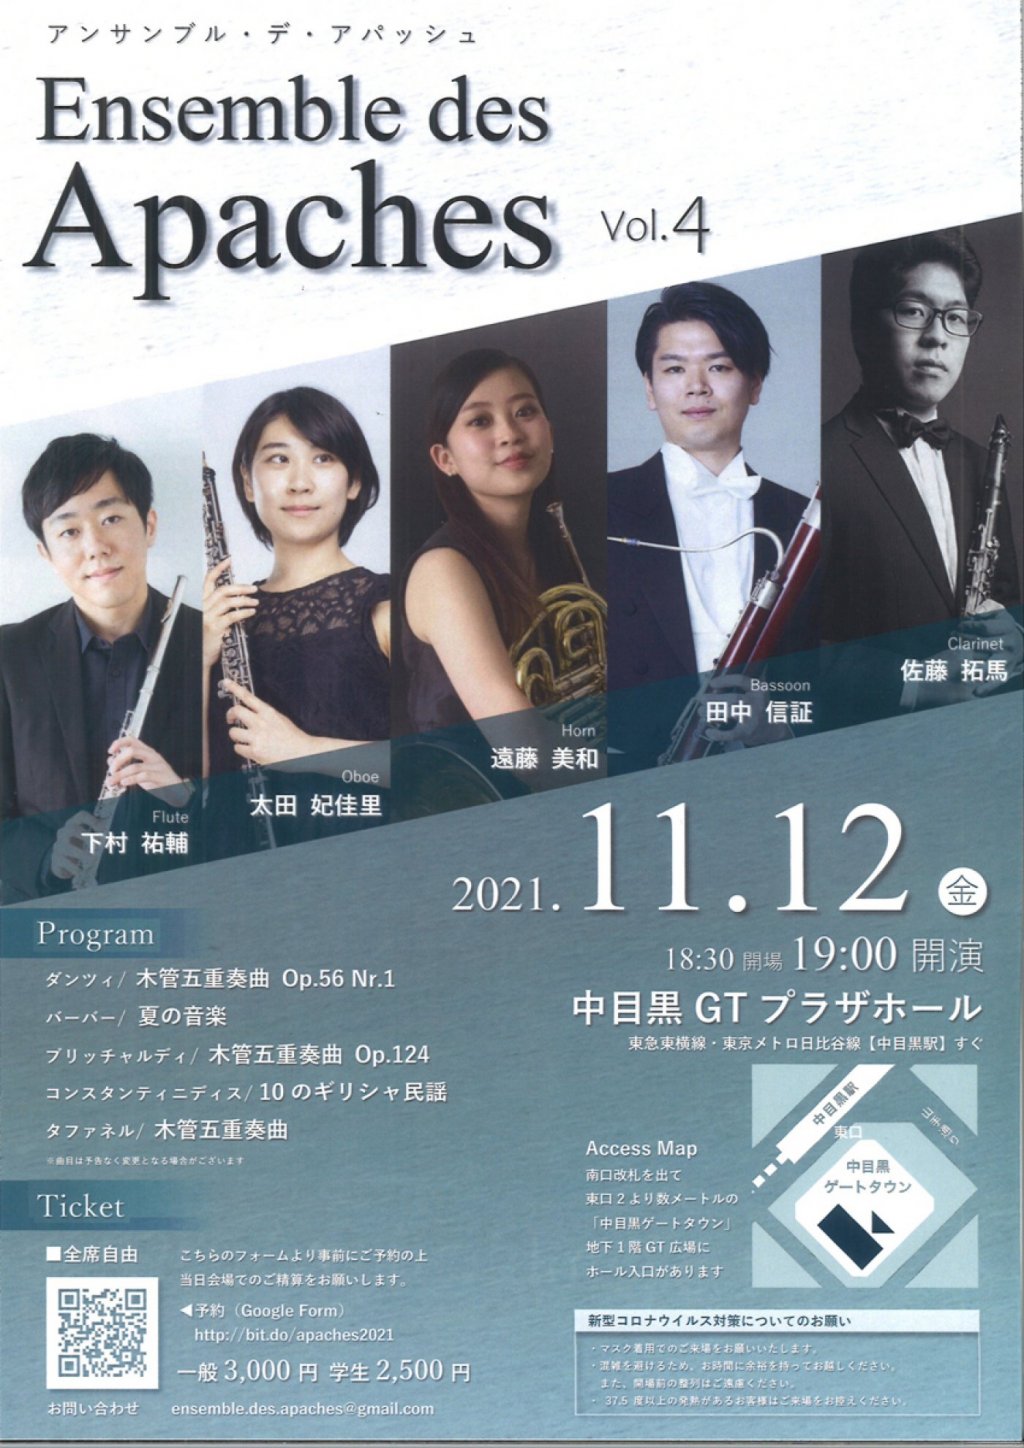 Ensemble des Apaches 4th concert